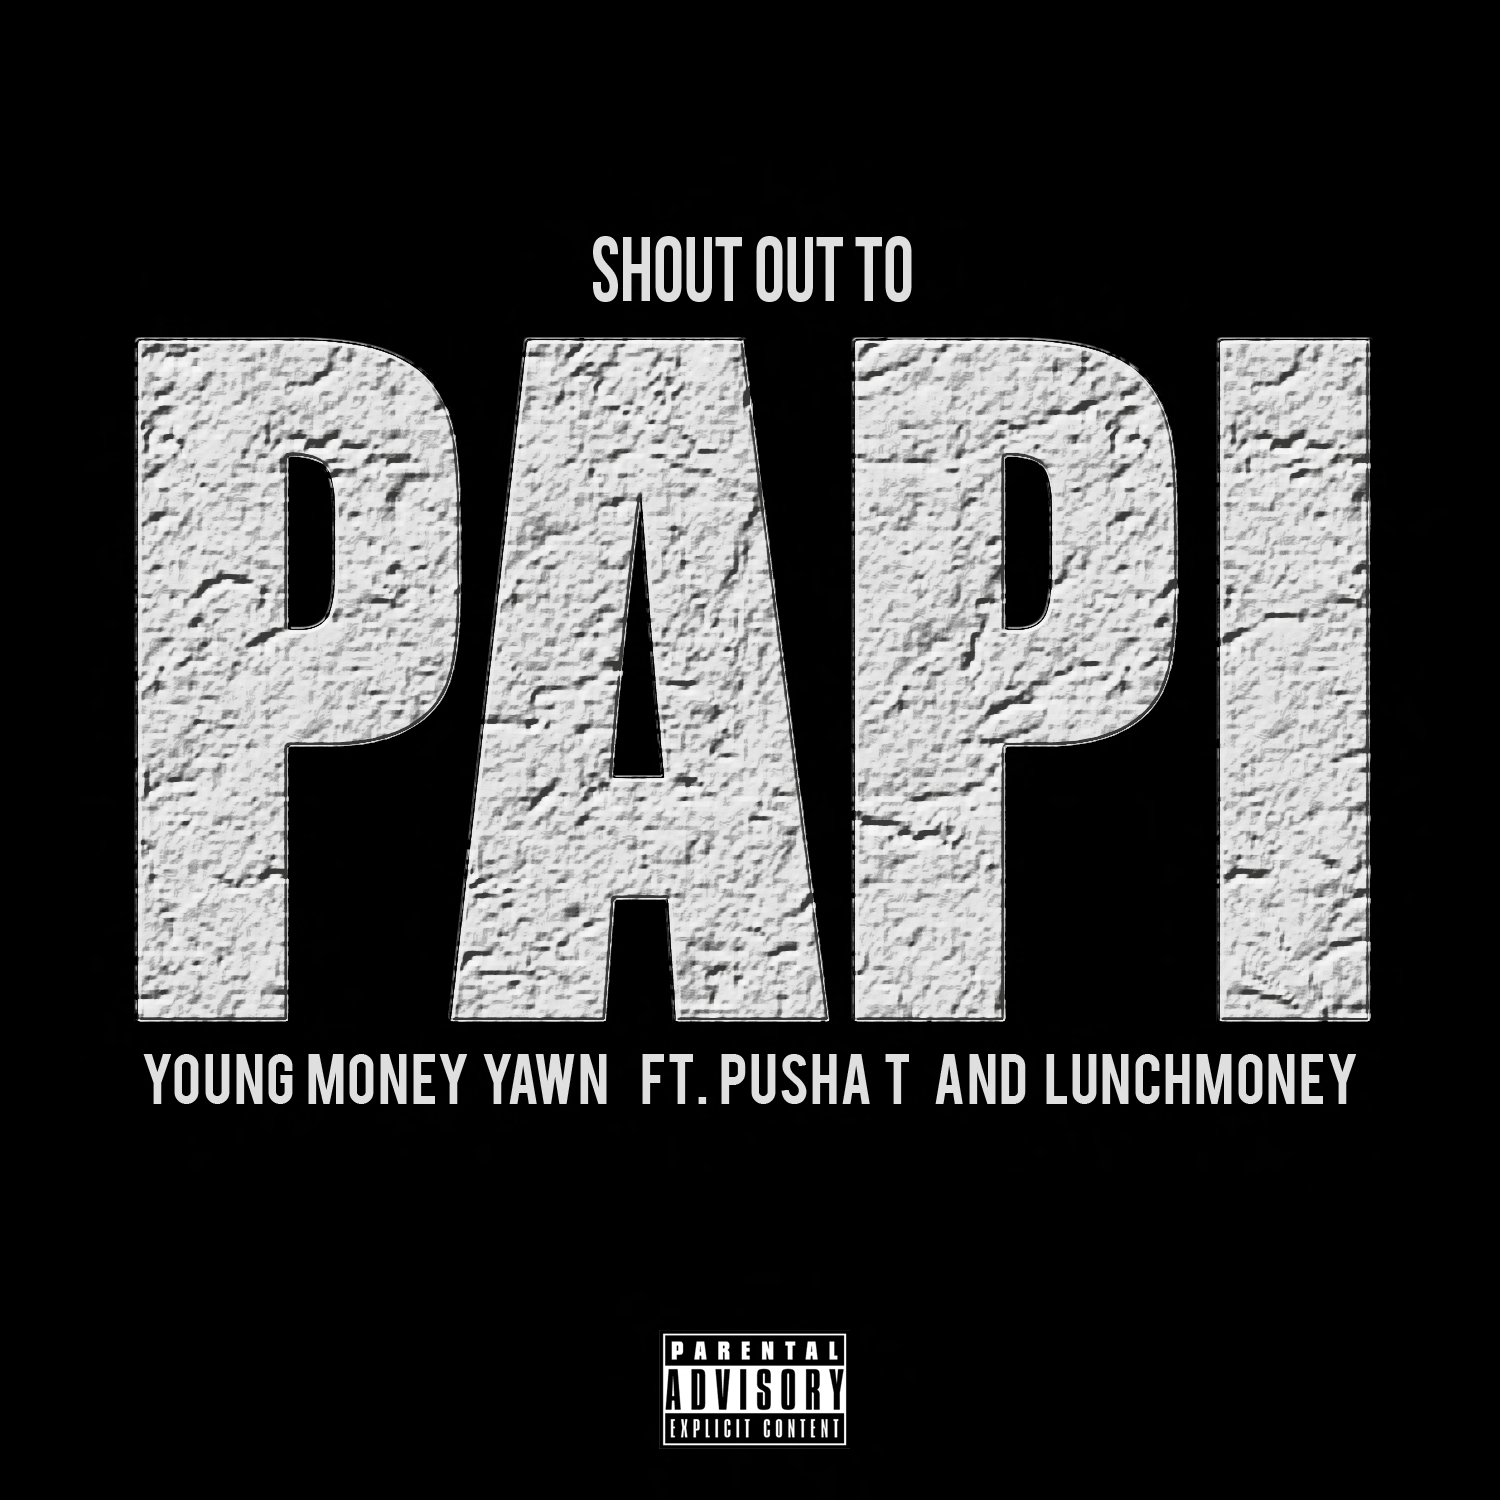 Shout out. Pusha t money. Shout out to. Shout песня. Feat pusha